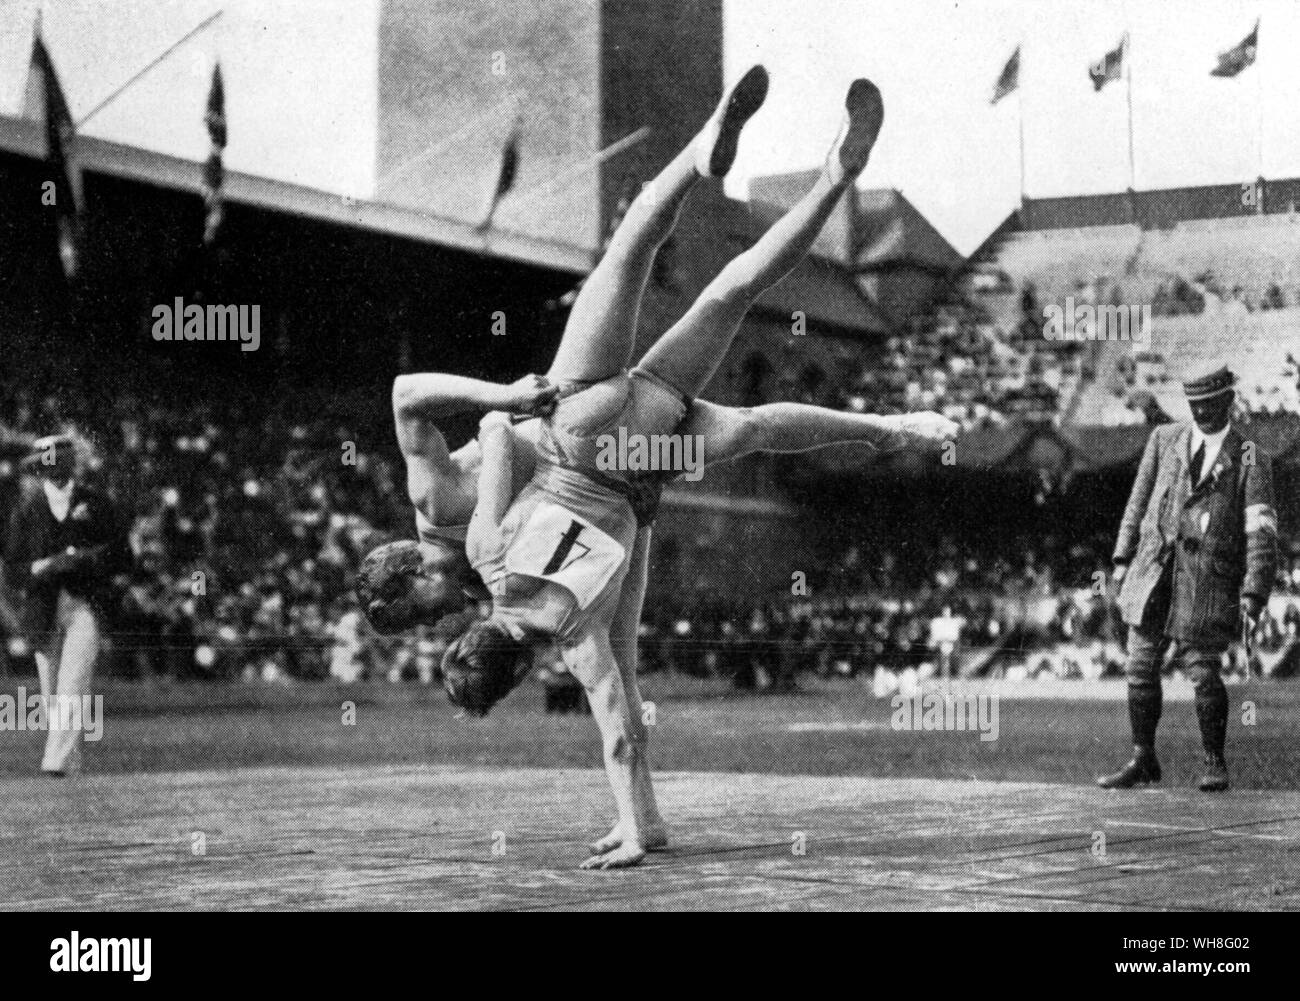 Stockholm 1912 Olympische Spiele. Eine Demonstration von glima Wrestling. Glima Wrestling ist noch in Skandinavien heute geübt und es wird geglaubt, dass es fast von der Wikingerzeit unverändert ist. Die Olympischen Spiele Seite 75. Stockfoto